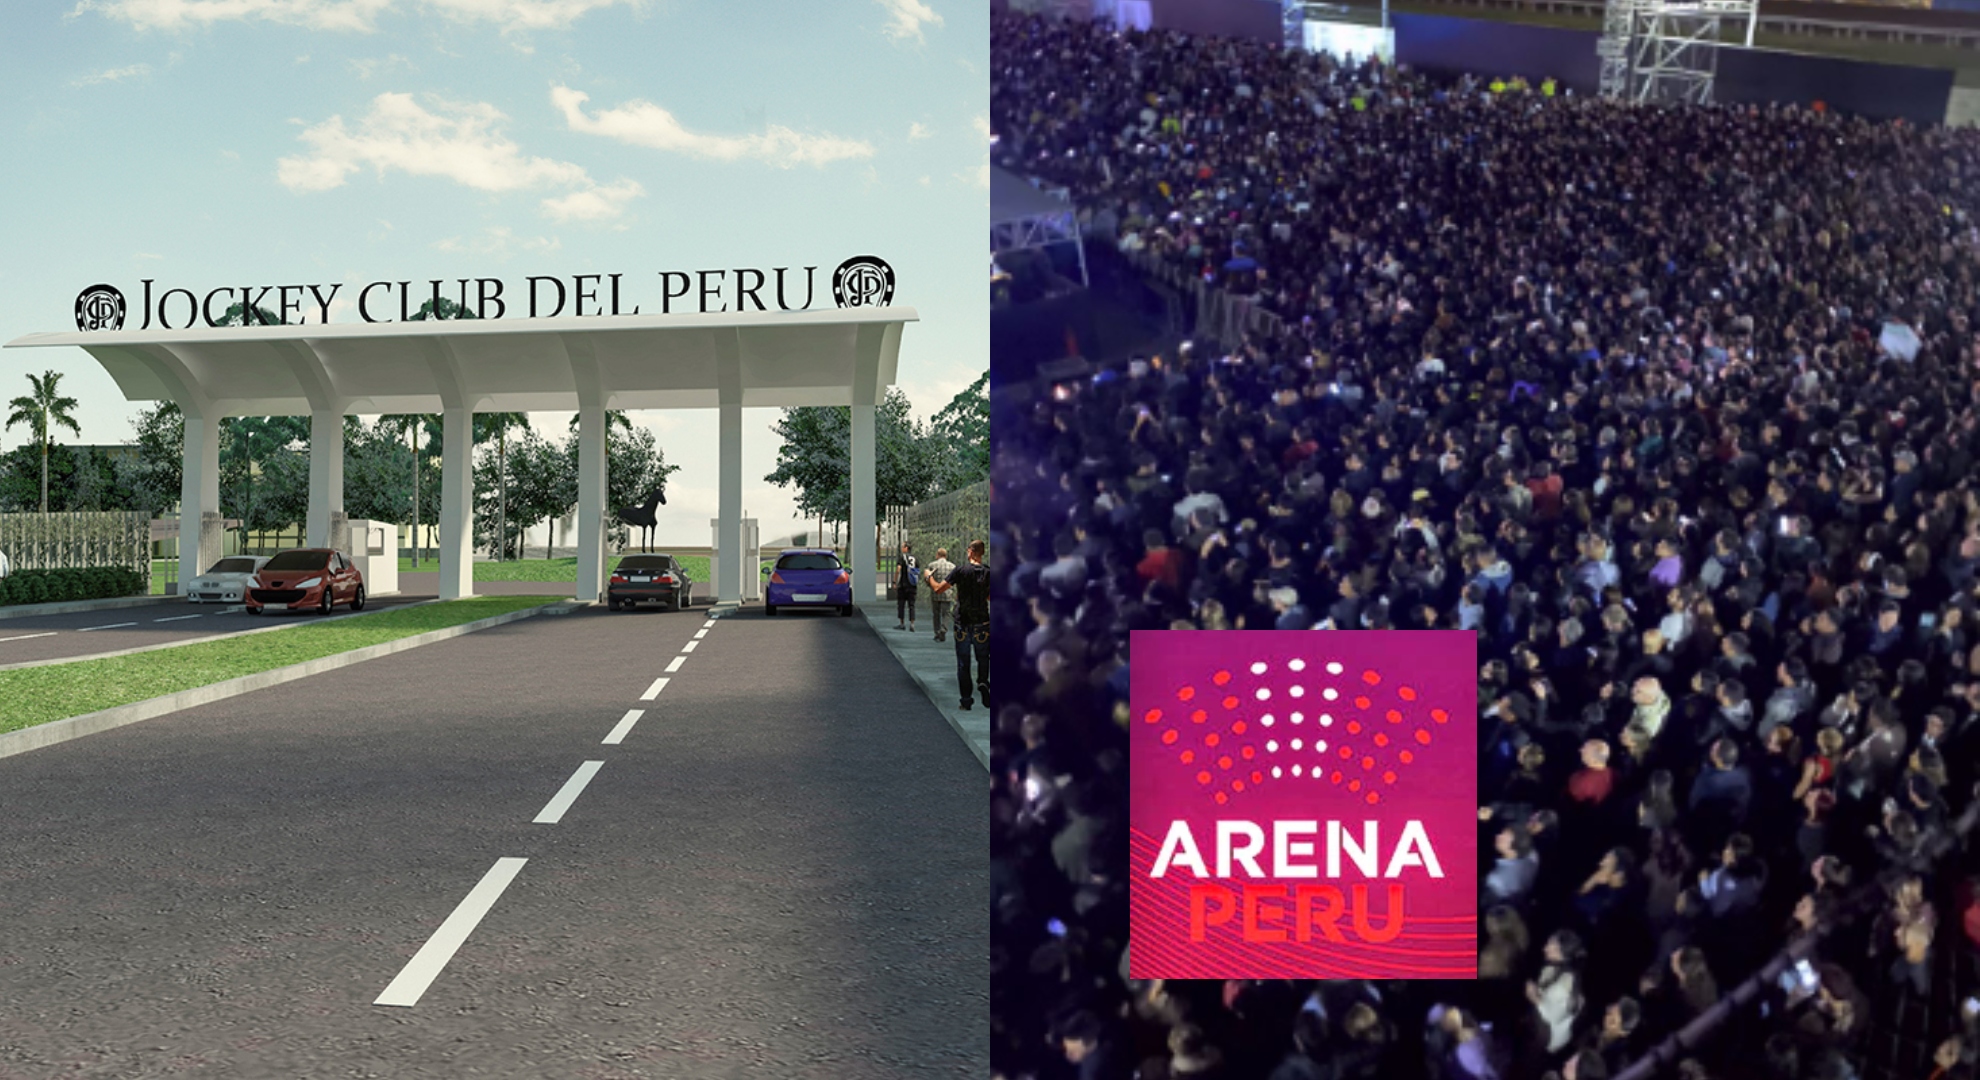 Jockey Club marcó distancia con lo ocurrido en Arena Perú: “Esos terrenos son de otra empresa”